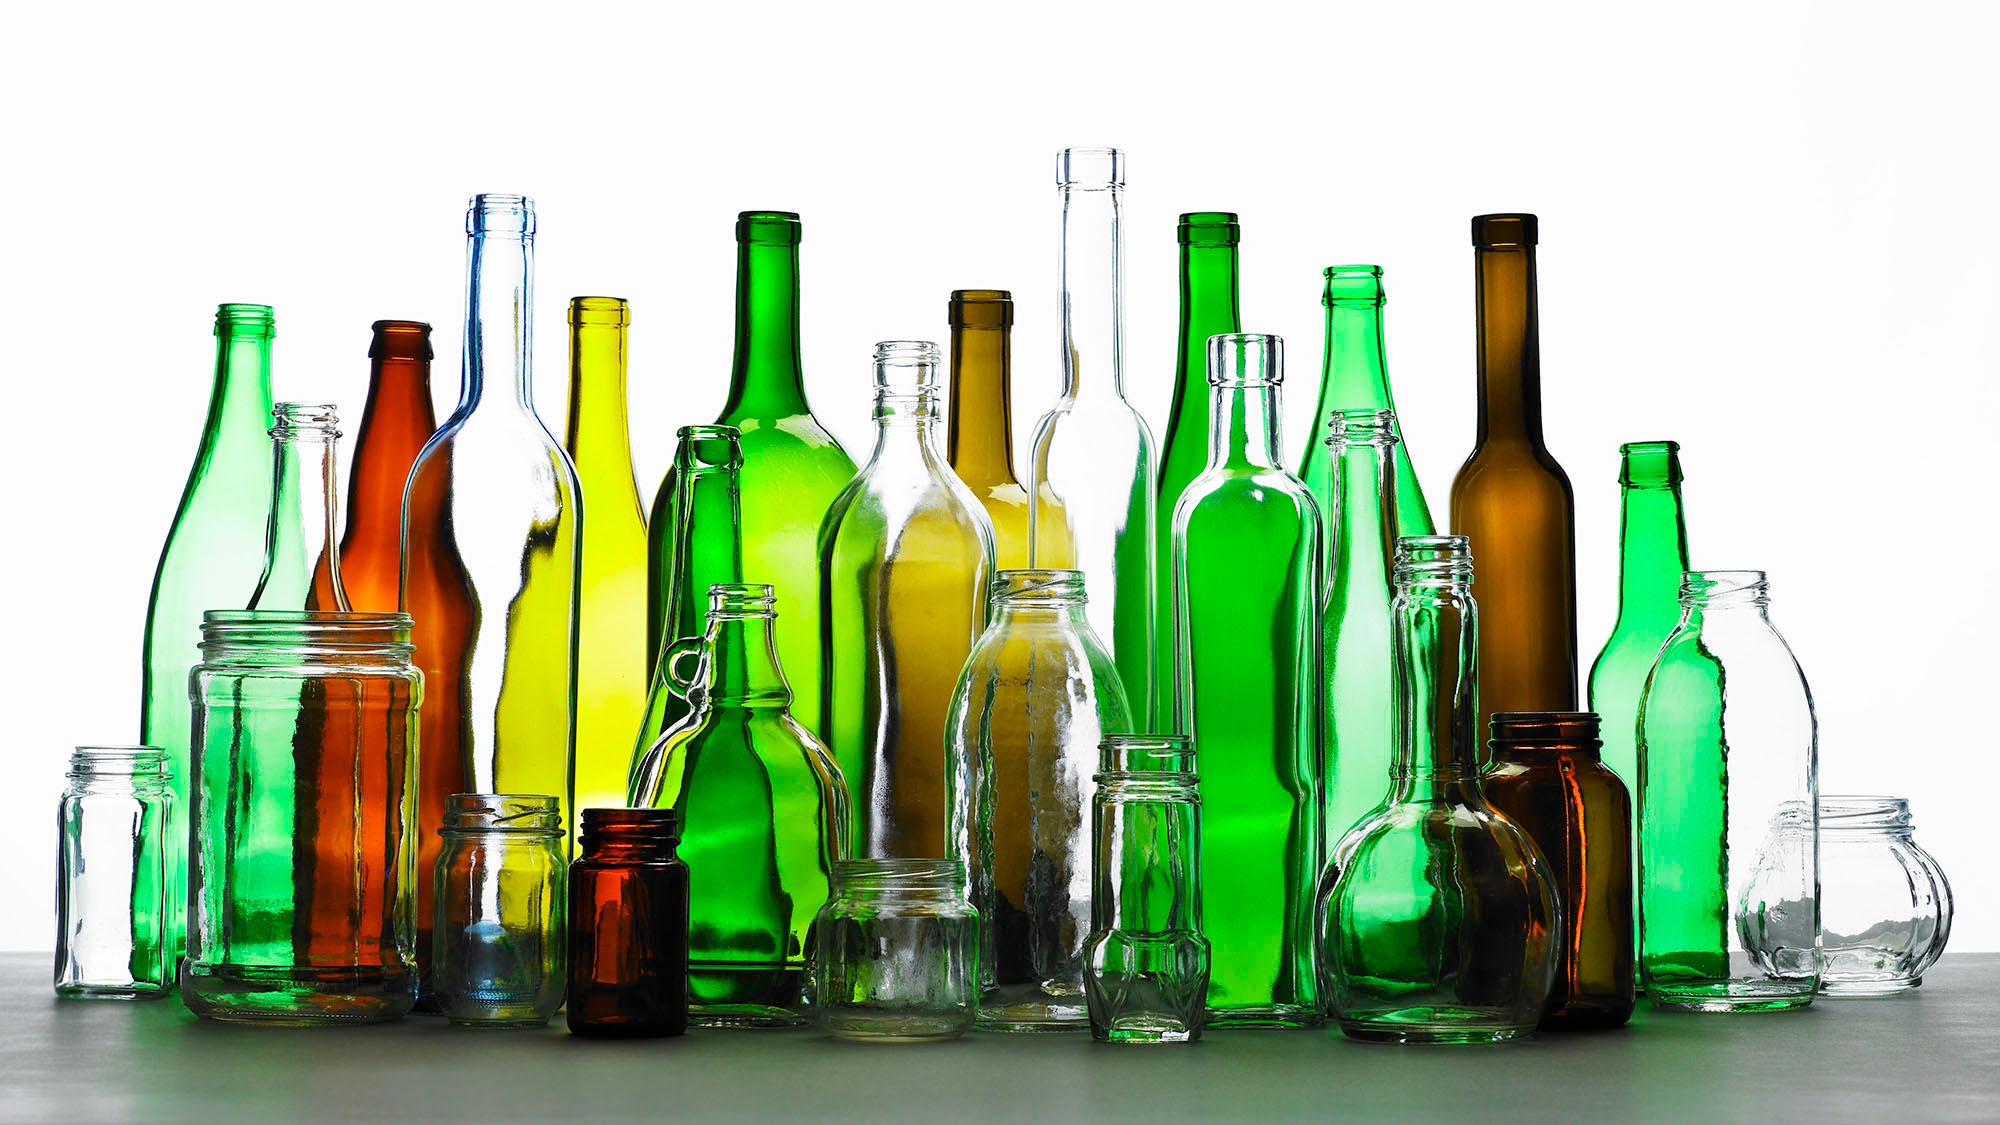 Mixed glass bottles